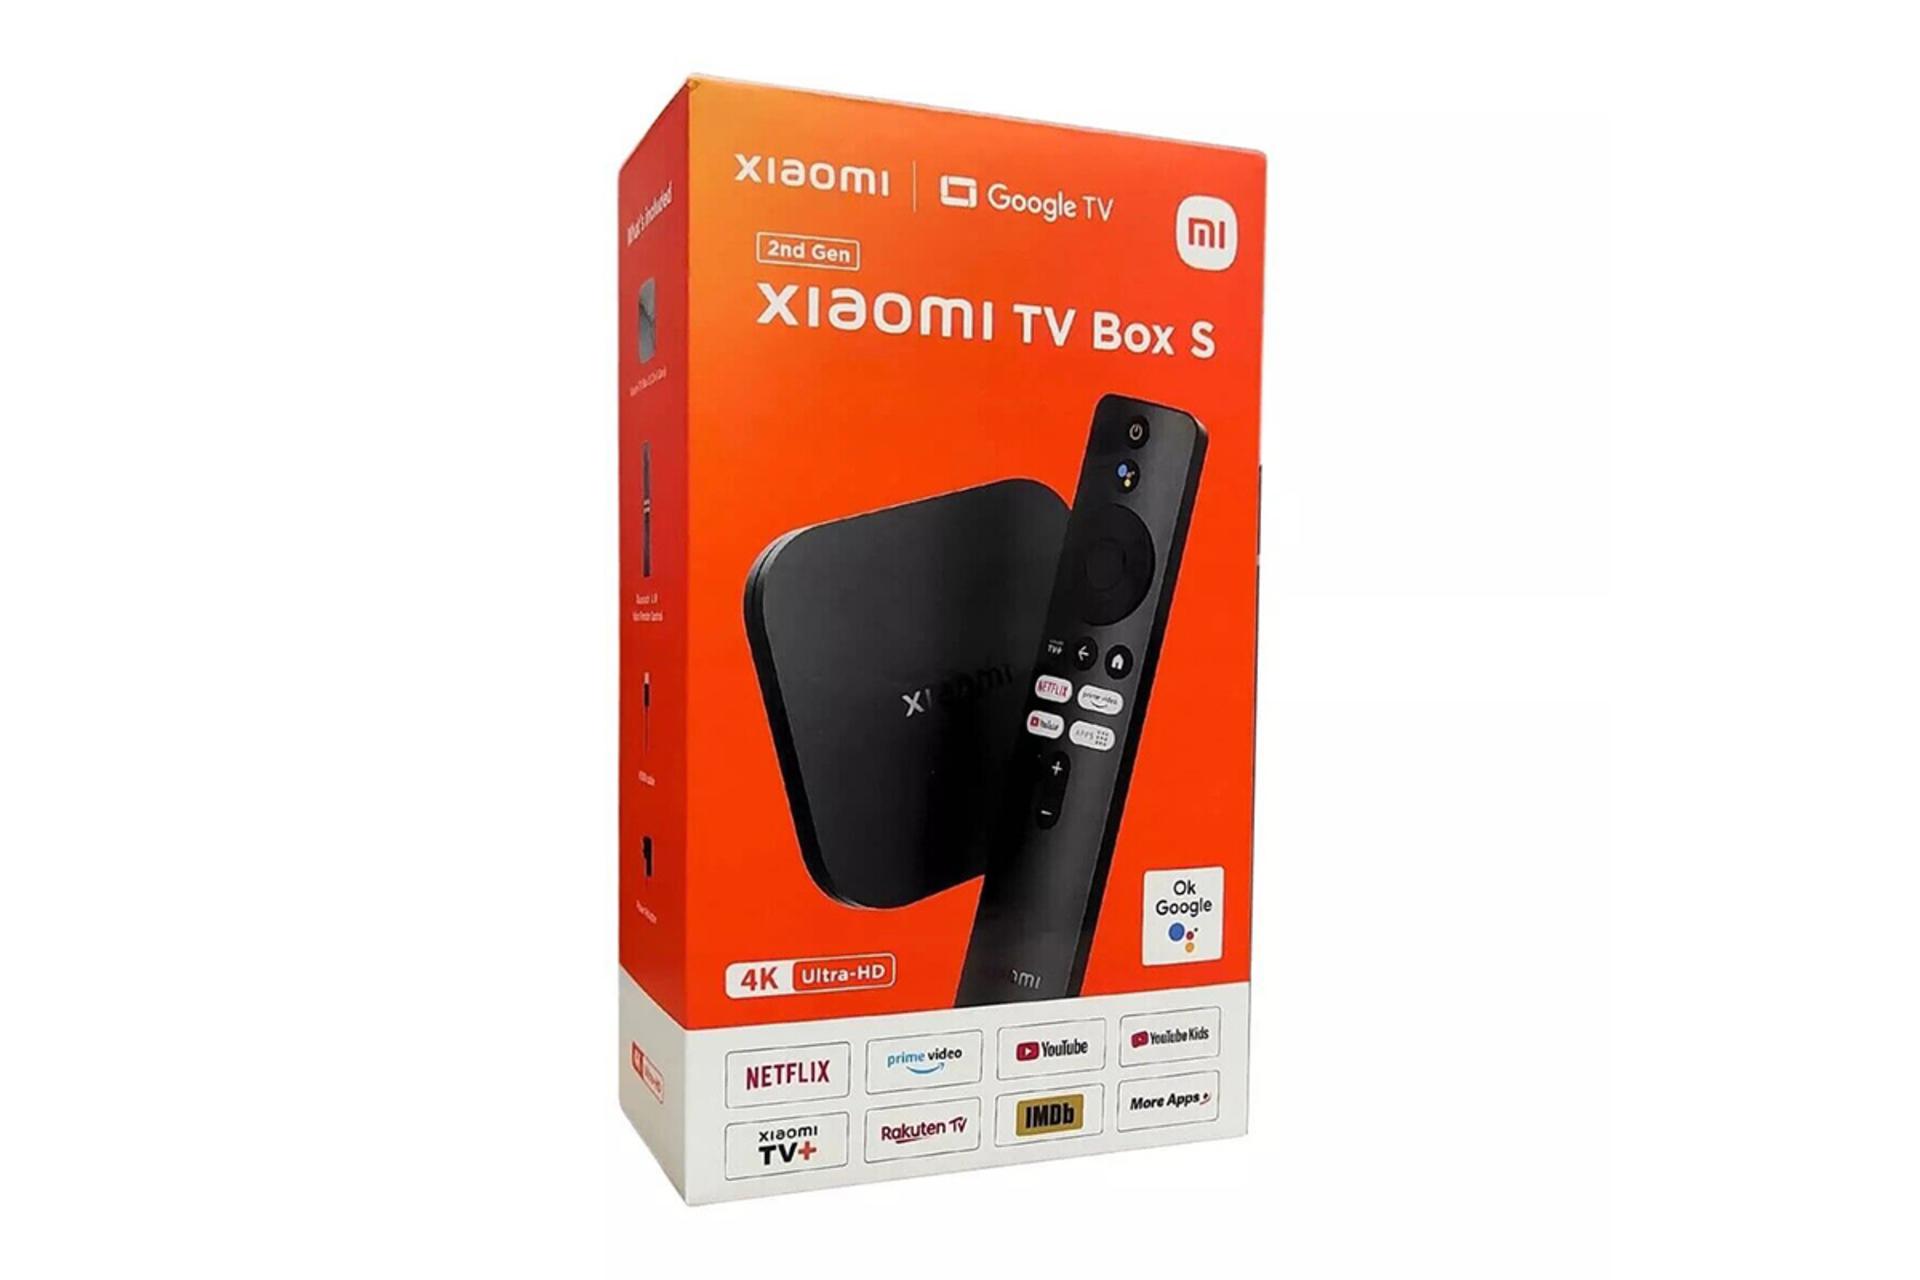 جعبه اندروید باکس شیائومی تی وی باکس S نسل دوم / Xiaomi TV Box S 2nd Gen